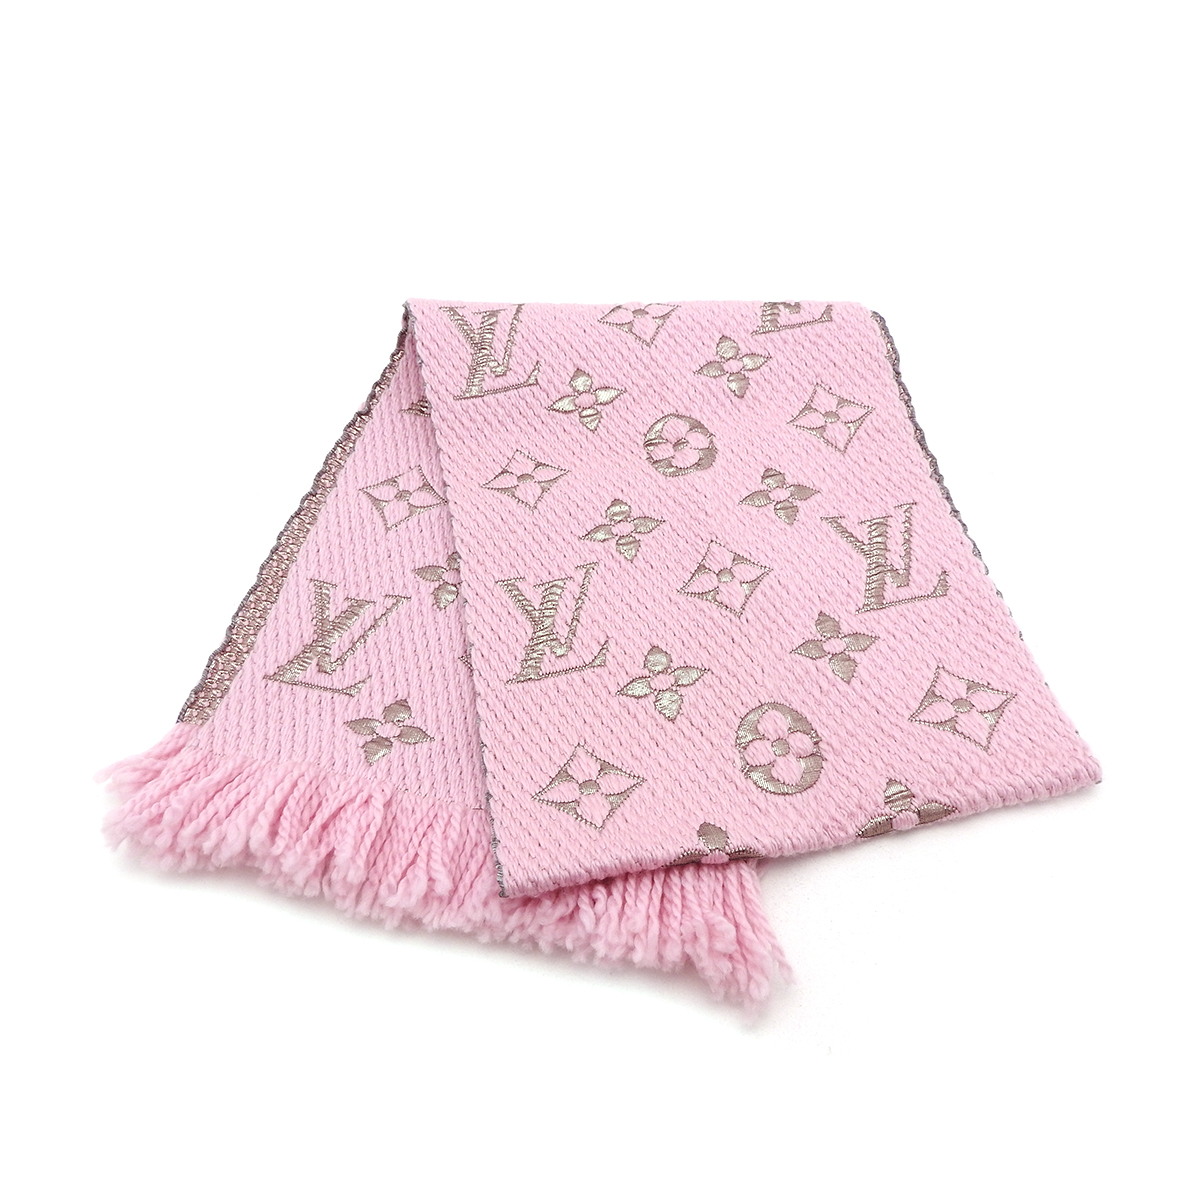 ルイヴィトン(Louis Vuitton) エシャルプ・ロゴマニア・シャイン M70466 ピンク